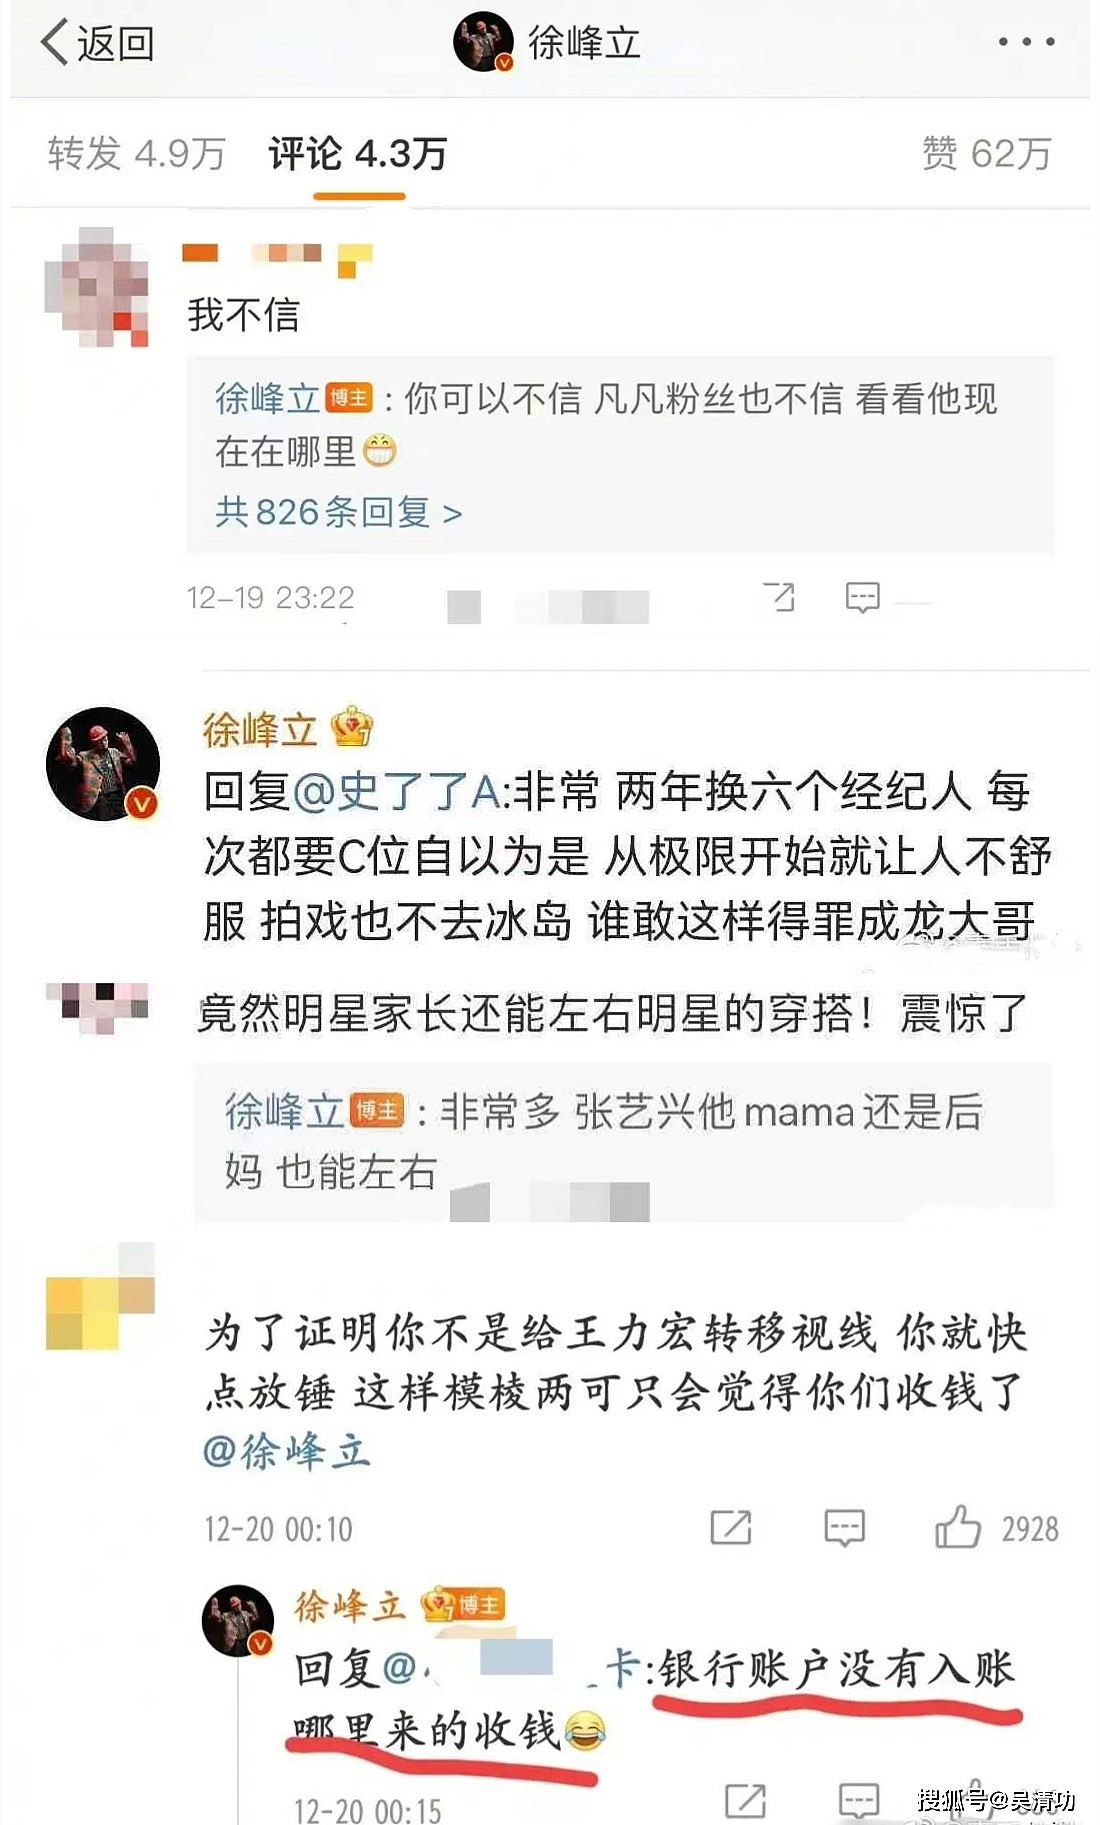 没诚意！造谣“张艺兴选妃”的徐峰立道歉了，却没有删除不实微博 - 6